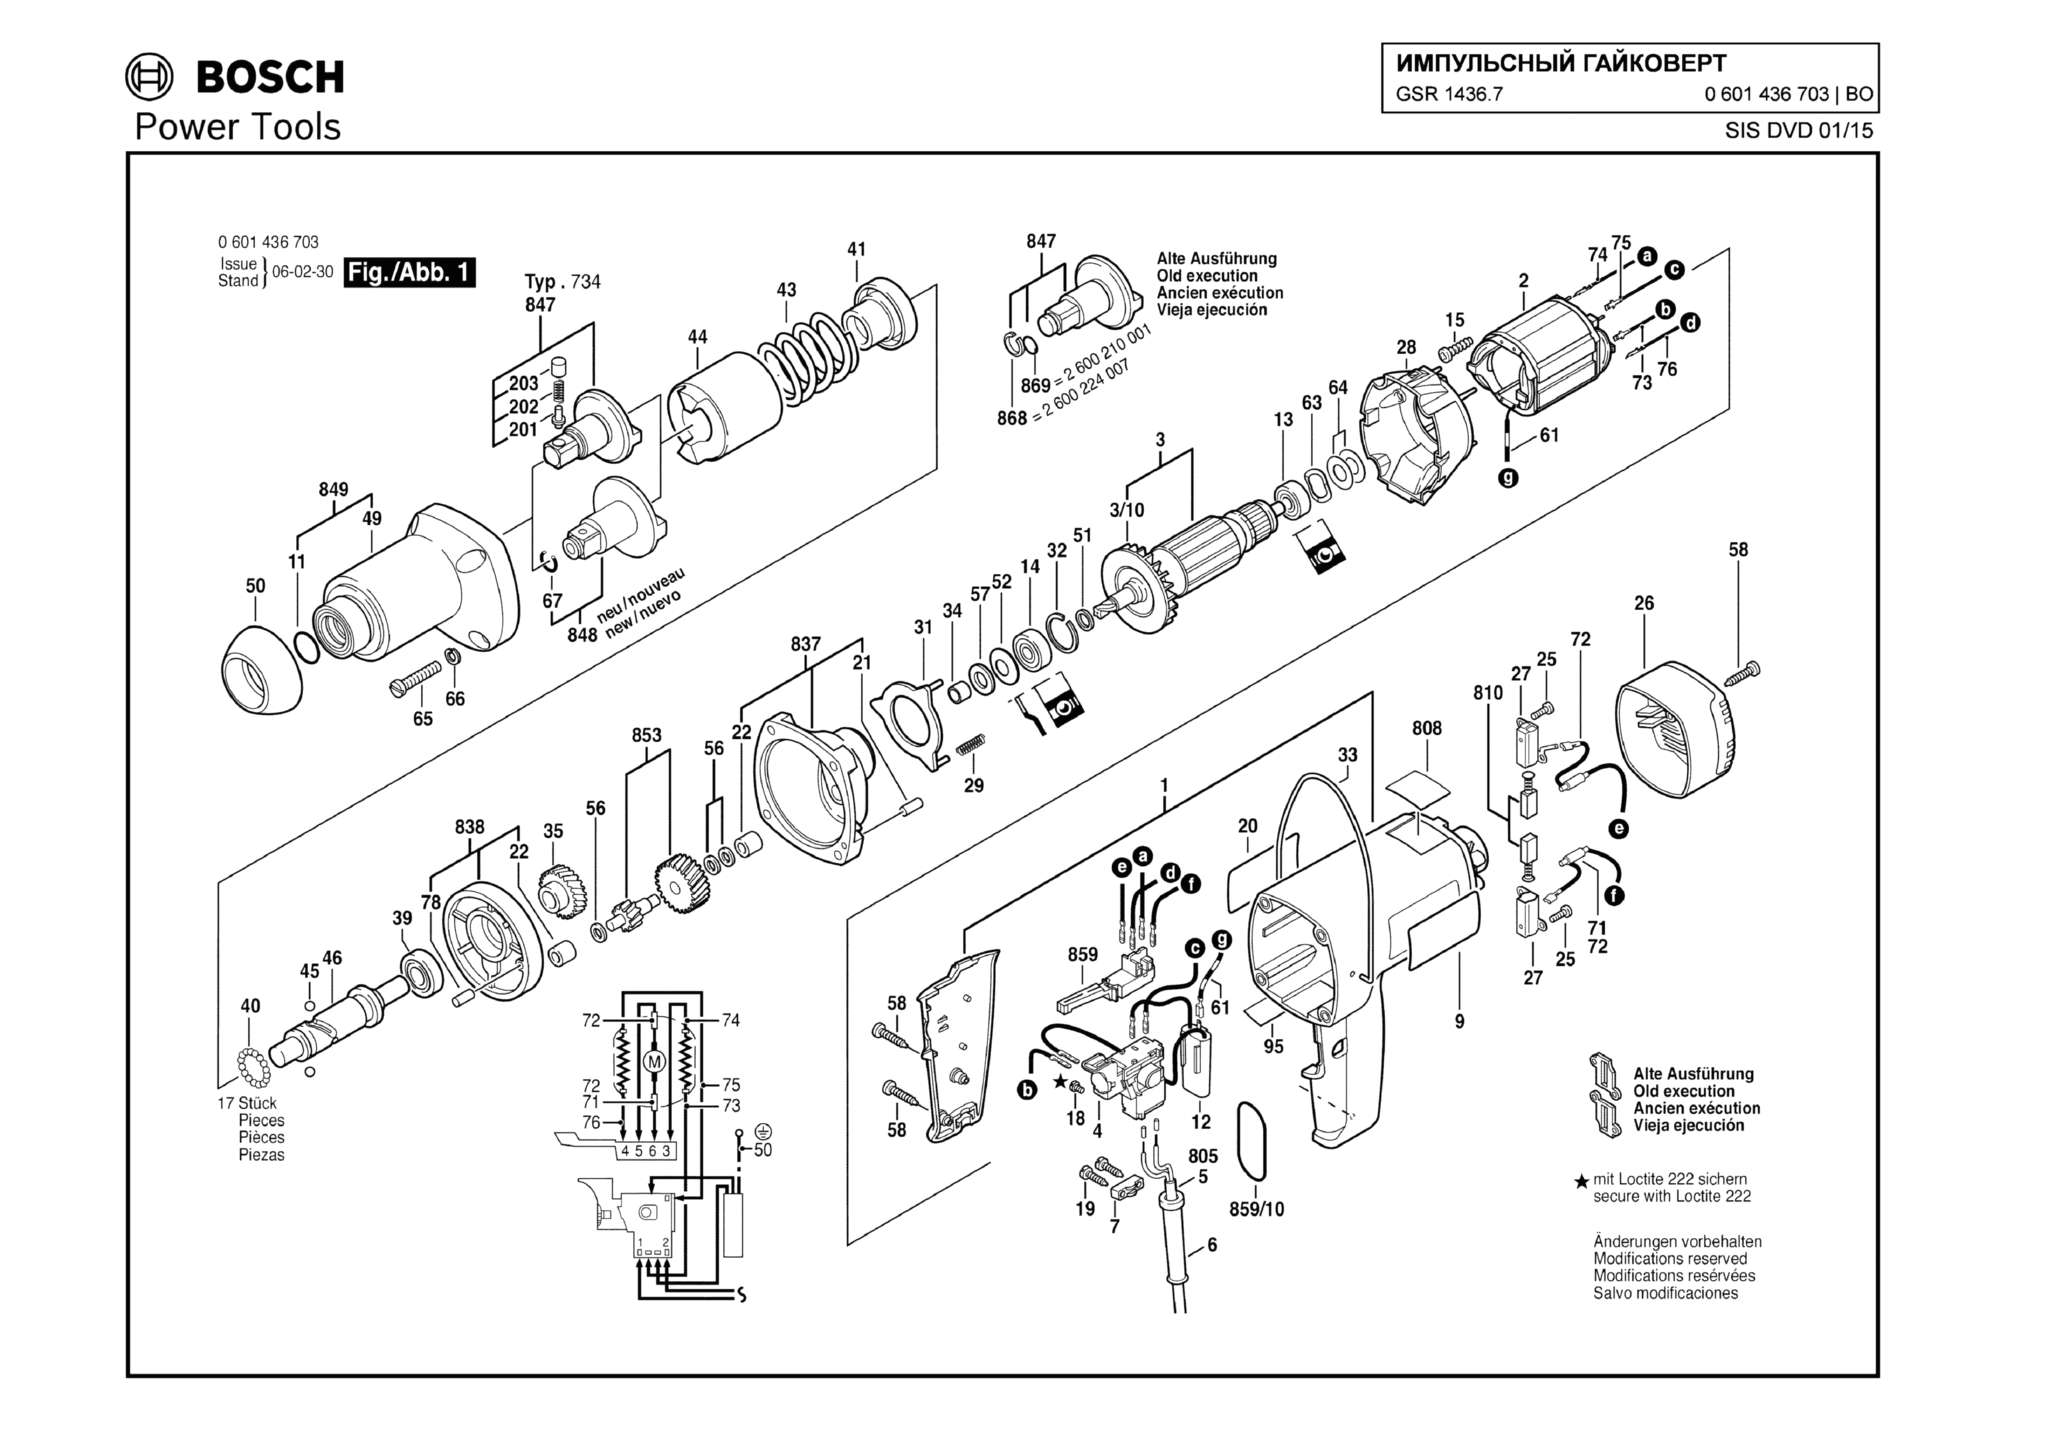 Запчасти, схема и деталировка Bosch GSR 1436.7 (ТИП 0601436703)